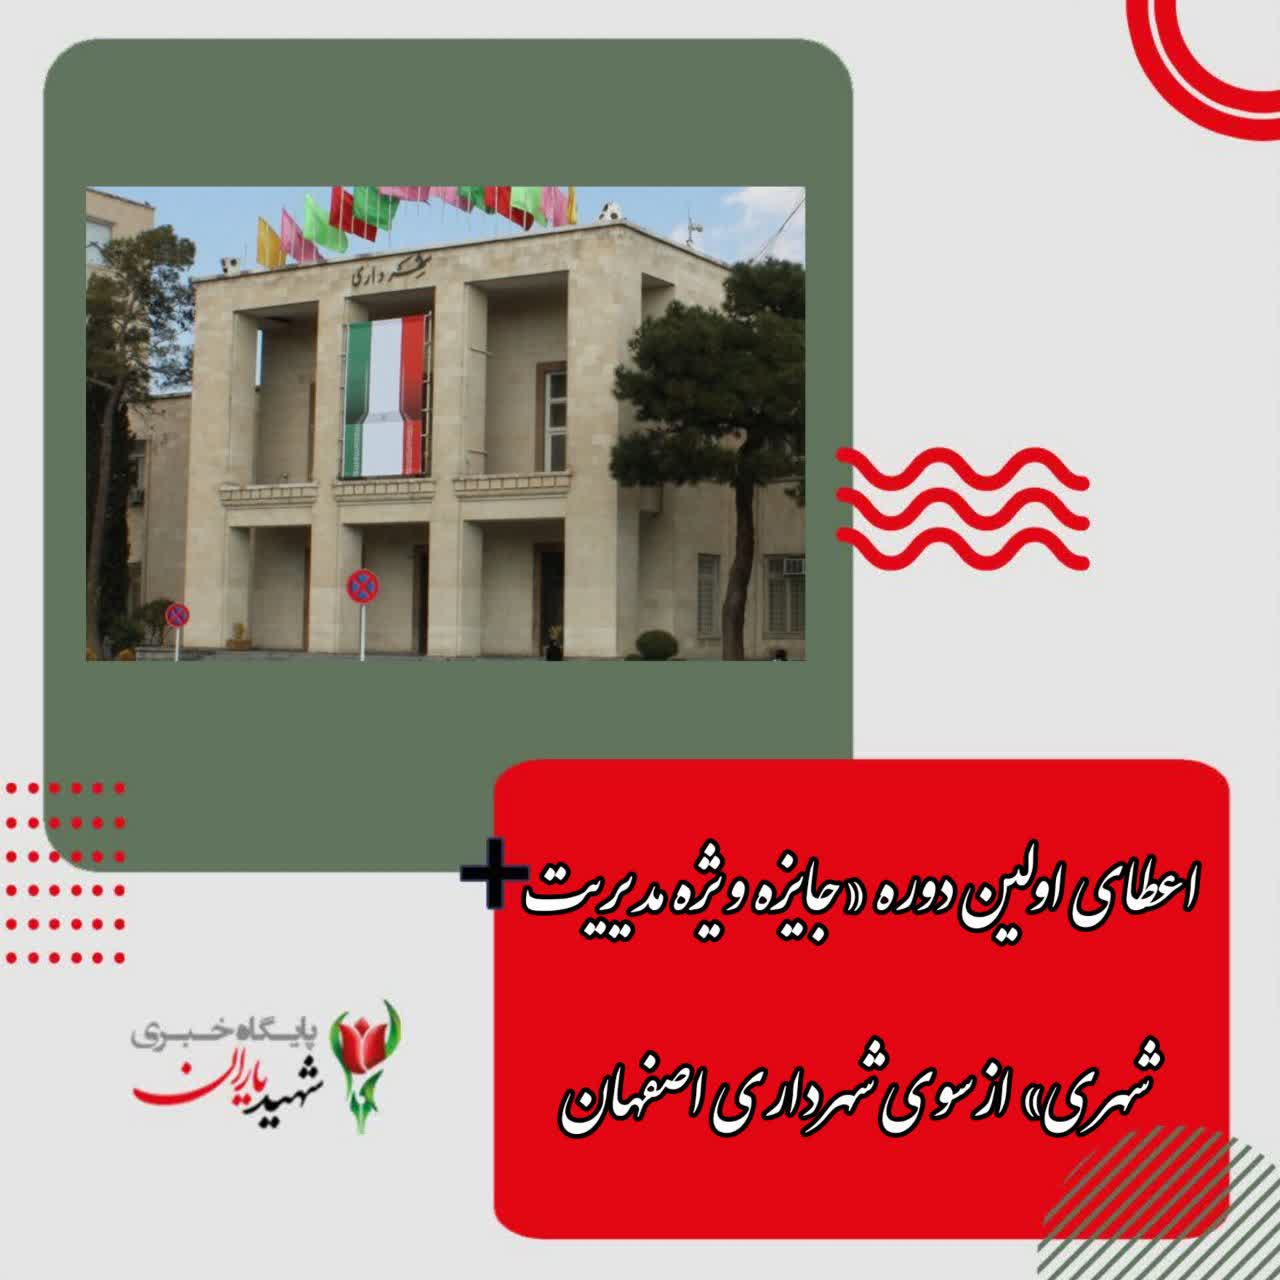 معاون برنامه ریزی و توسعه سرمایه انسانی شهرداری اصفهان خبر داد: